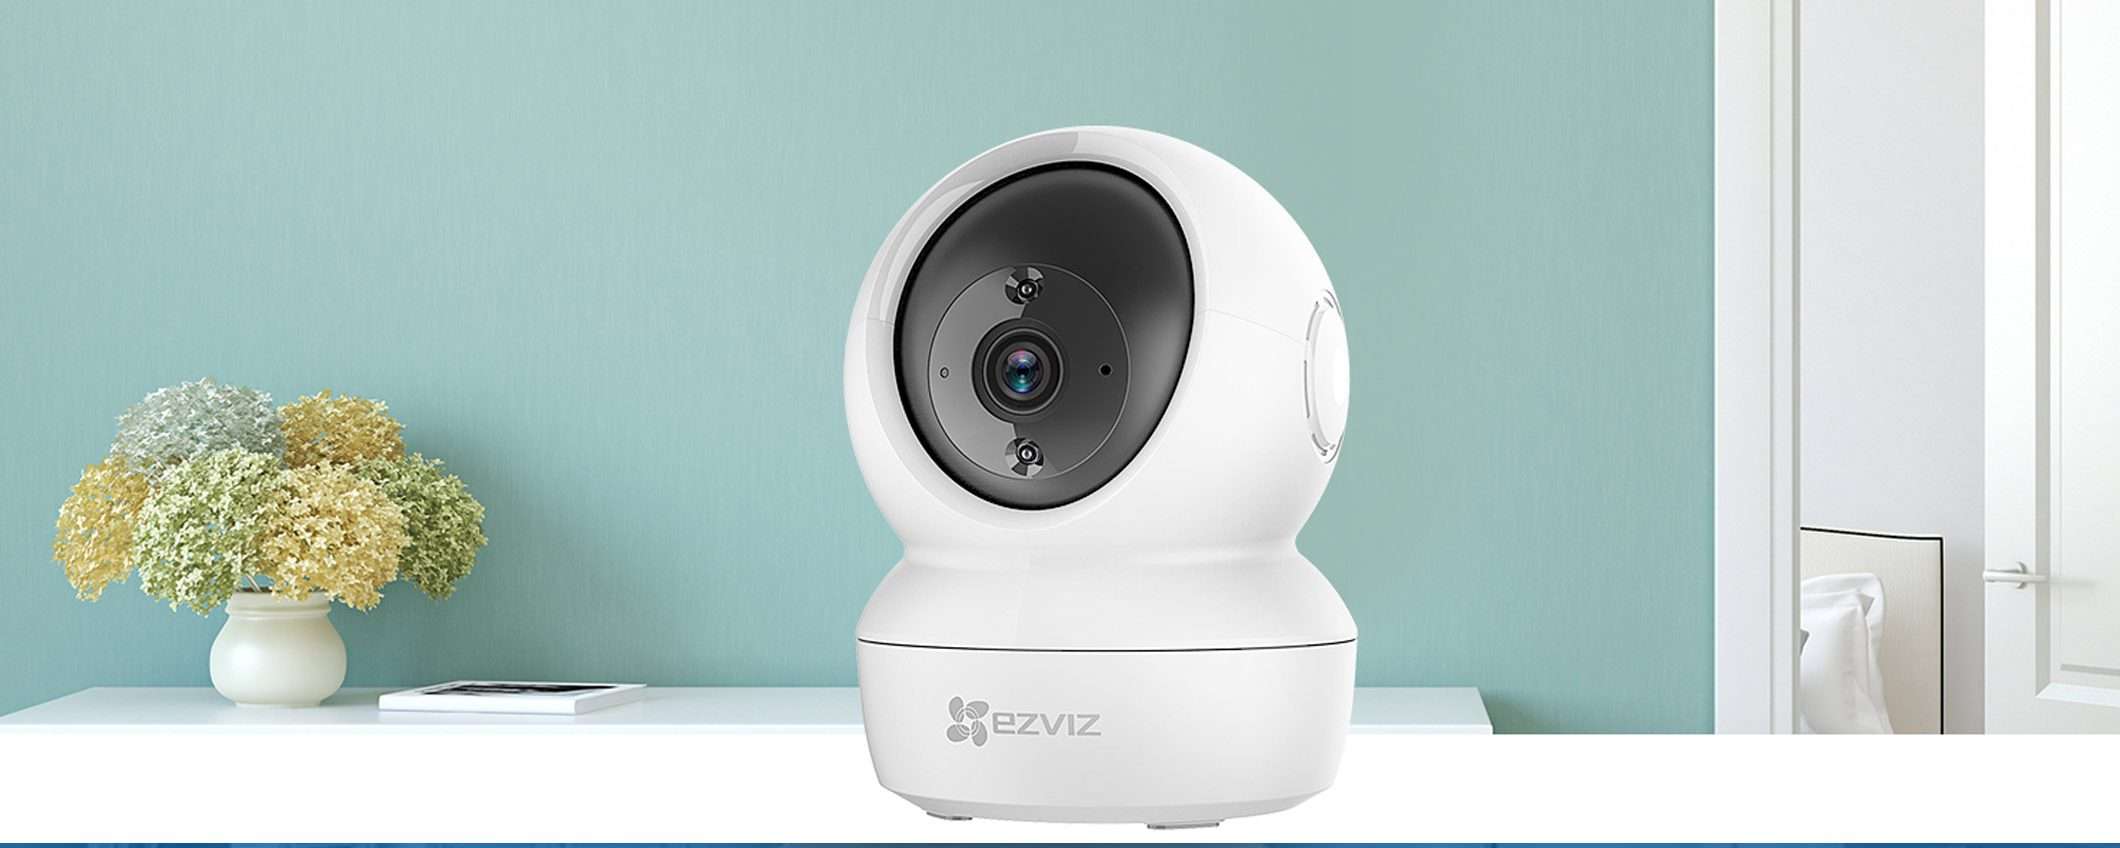 Videocamere EZVIZ: vulnerabilità e privacy a rischio